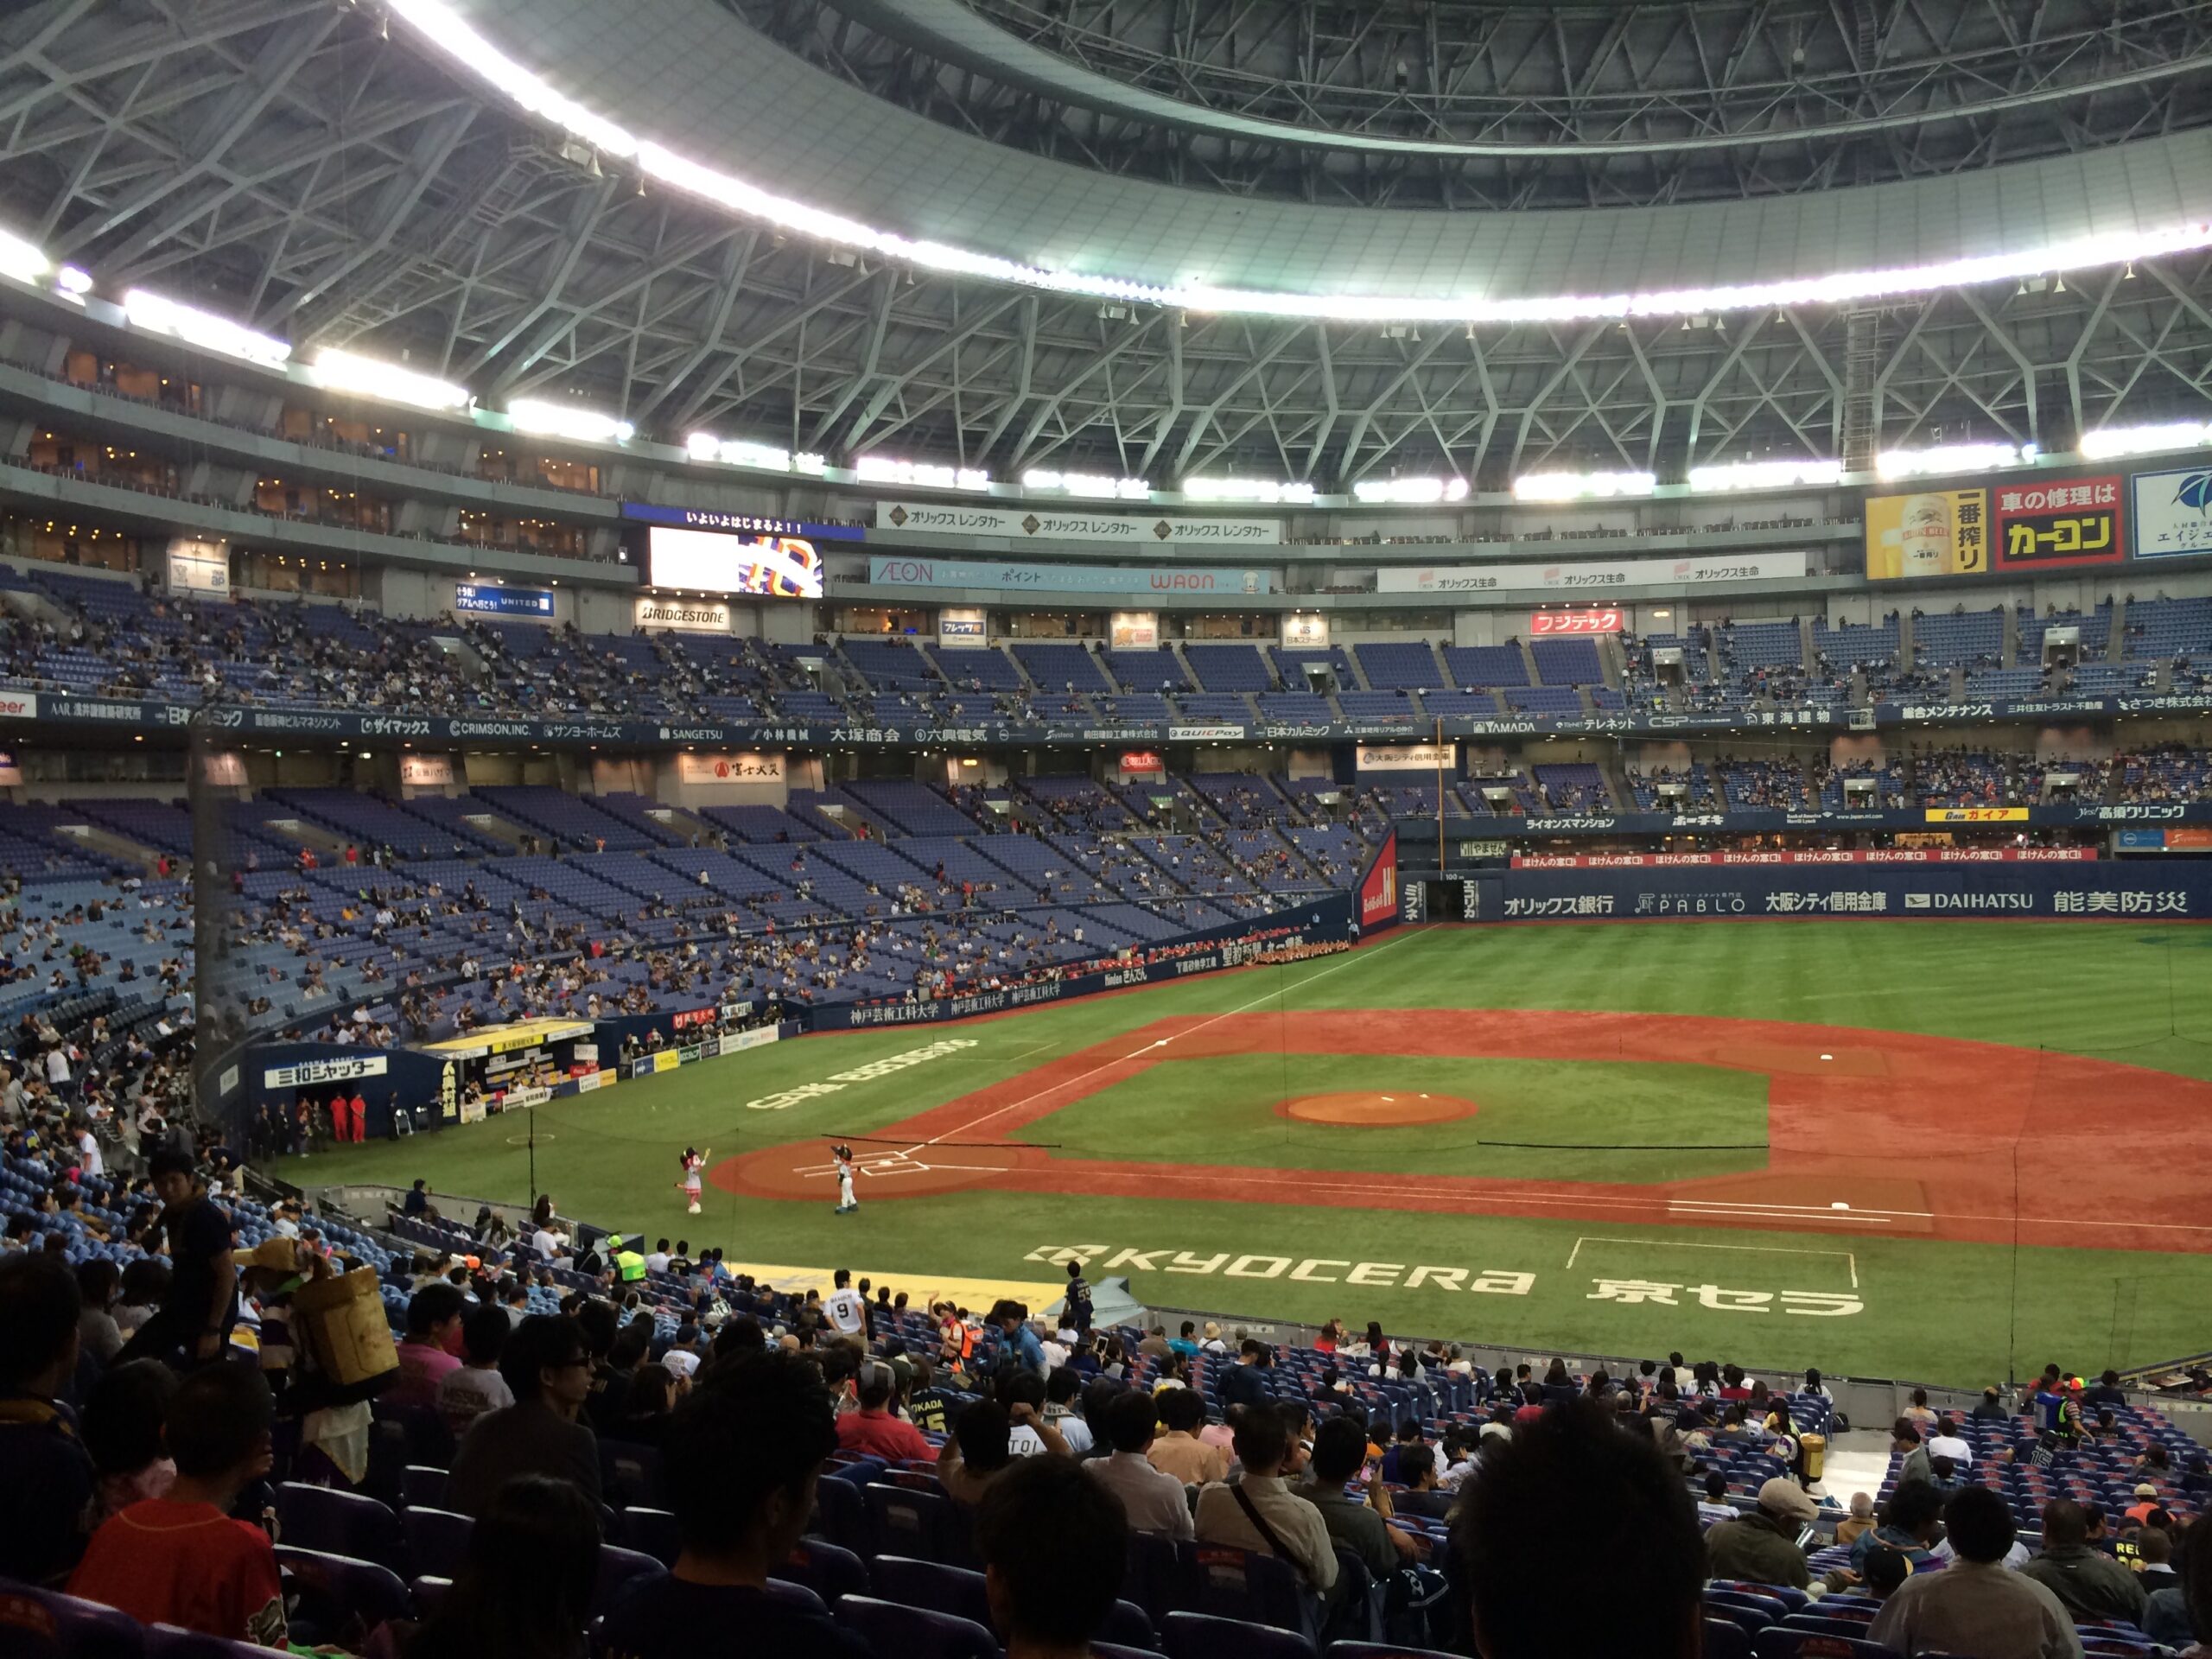 オリックス・バファローズが主催している試合中の京セラドーム大阪の画像